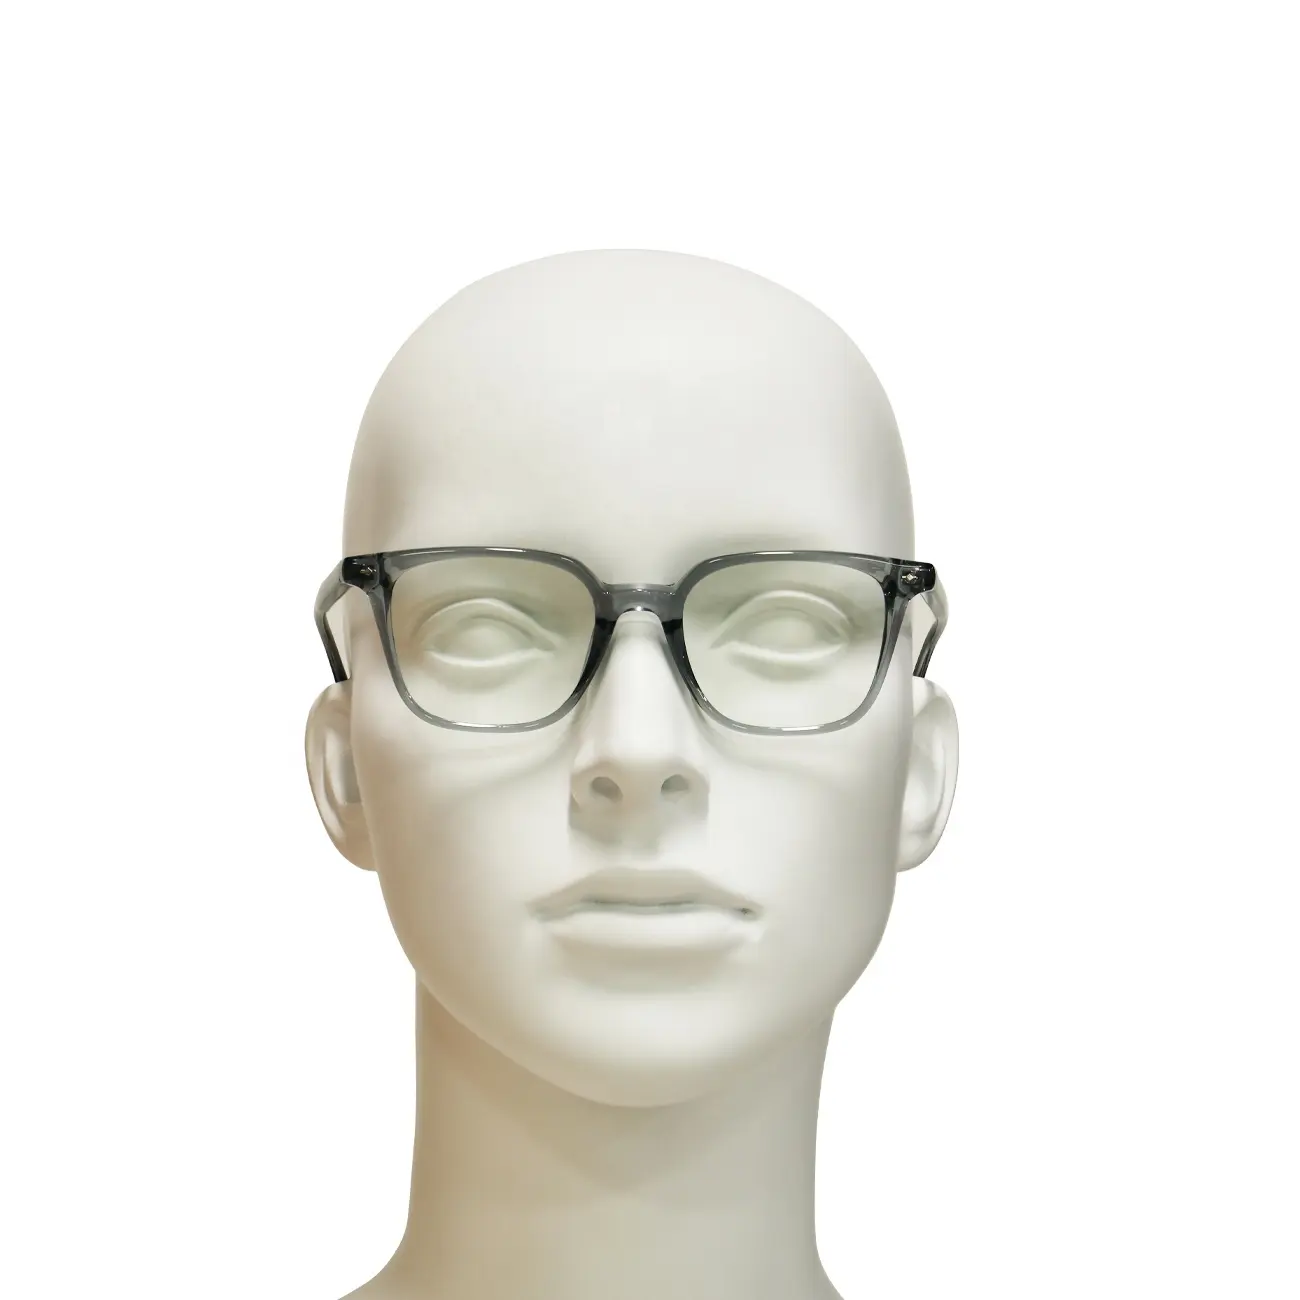 جودة عالية فريدة للرجال والنساء مصنوعة يدويًا إطارات شفافة نظارات بصرية كلاسيكية